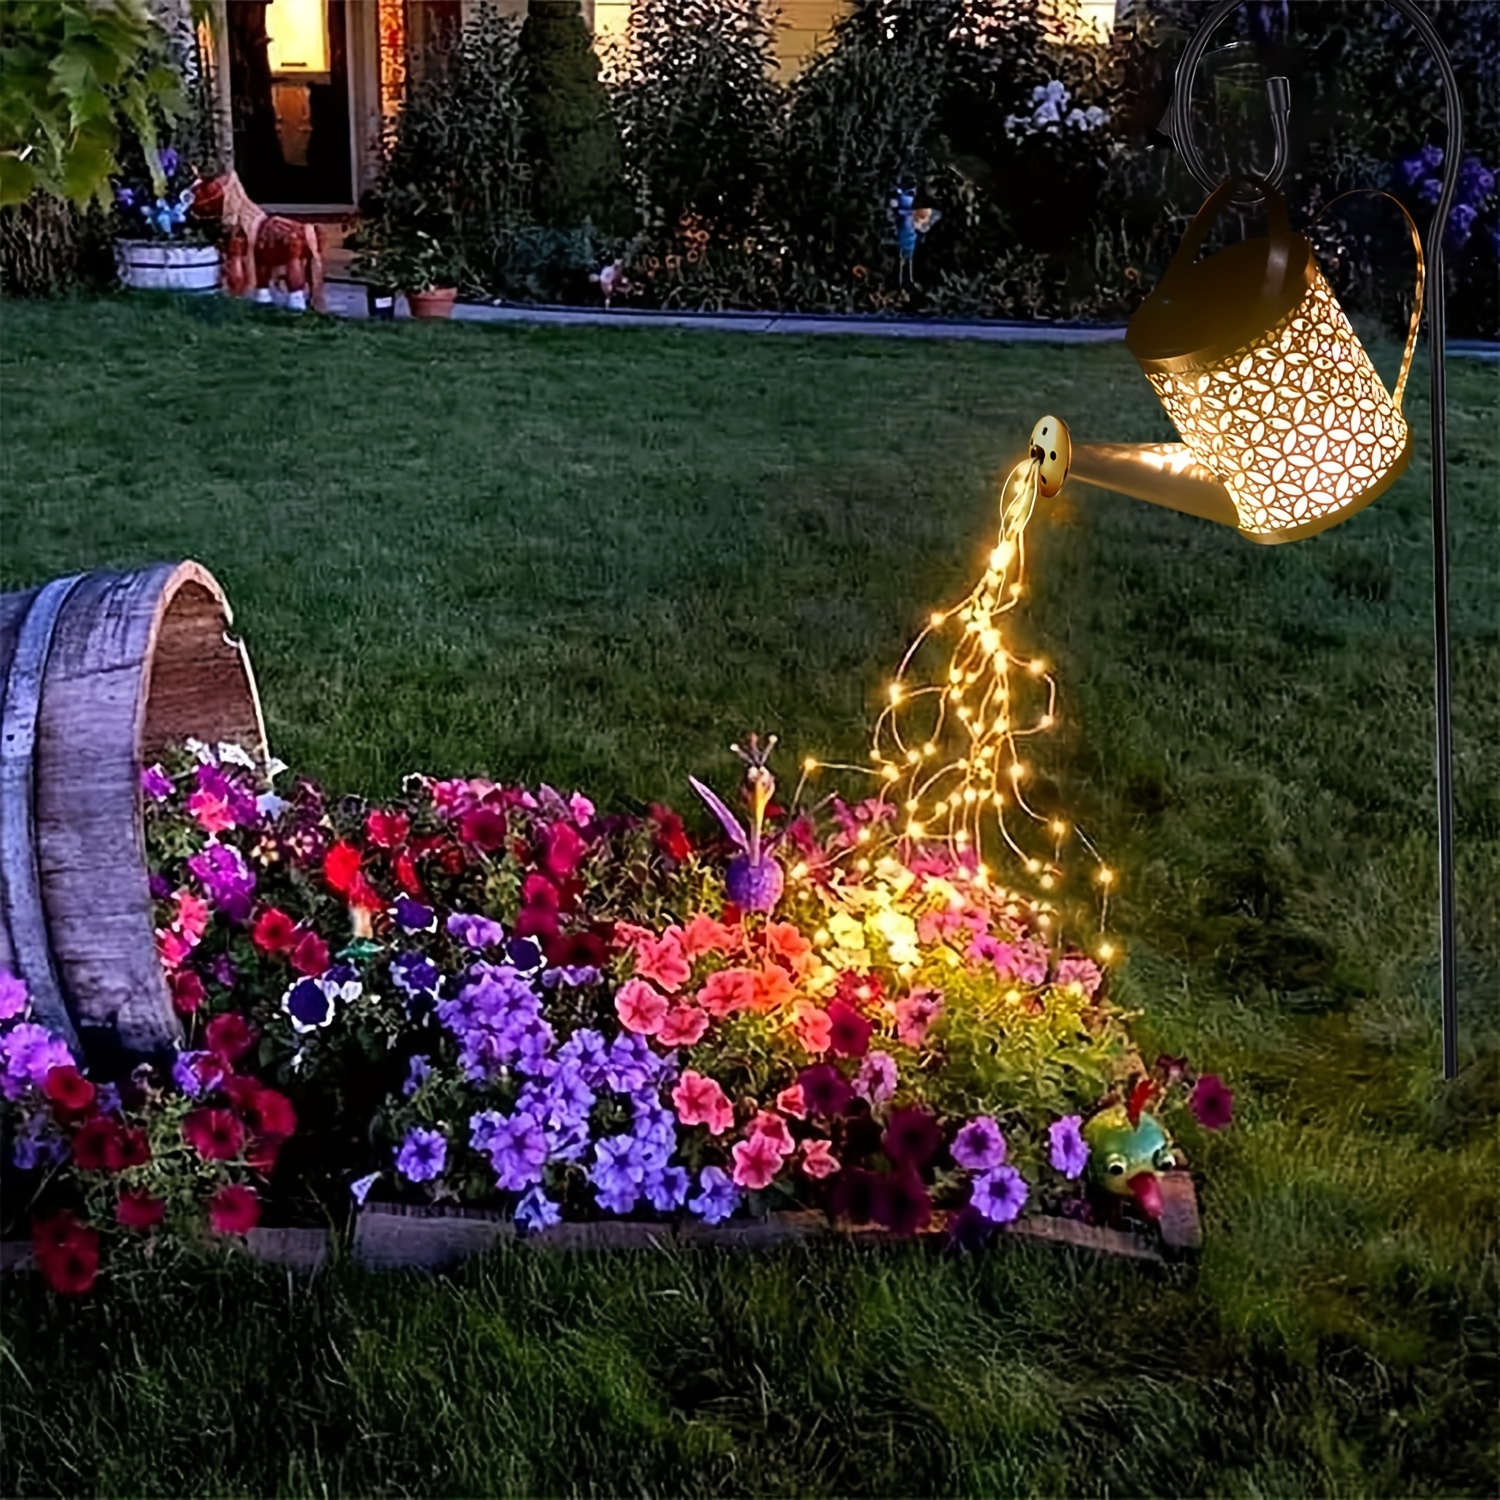 Las luces solares decorativas que harán de tu jardín o terraza un